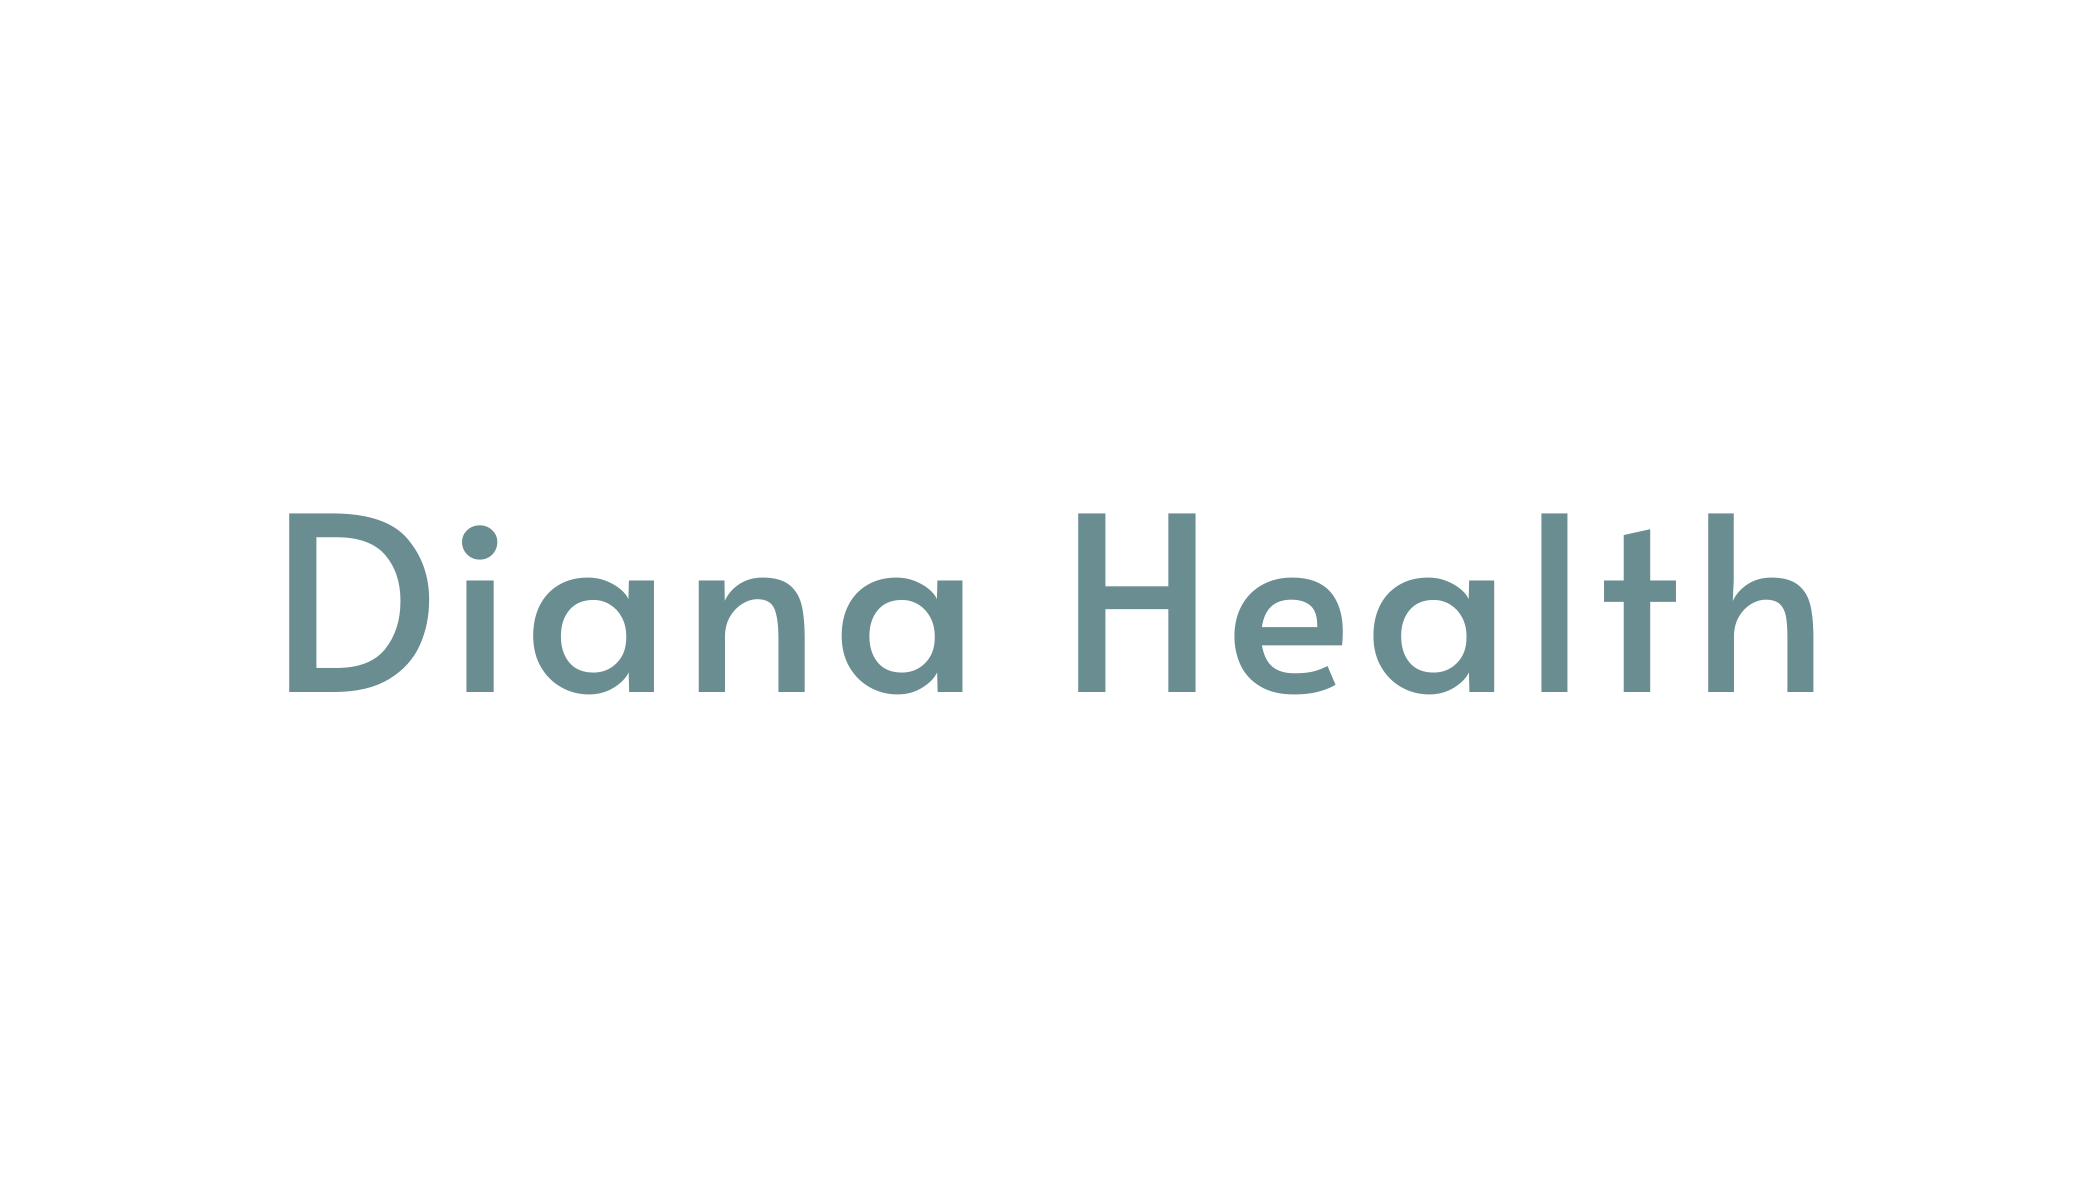 Diana Health